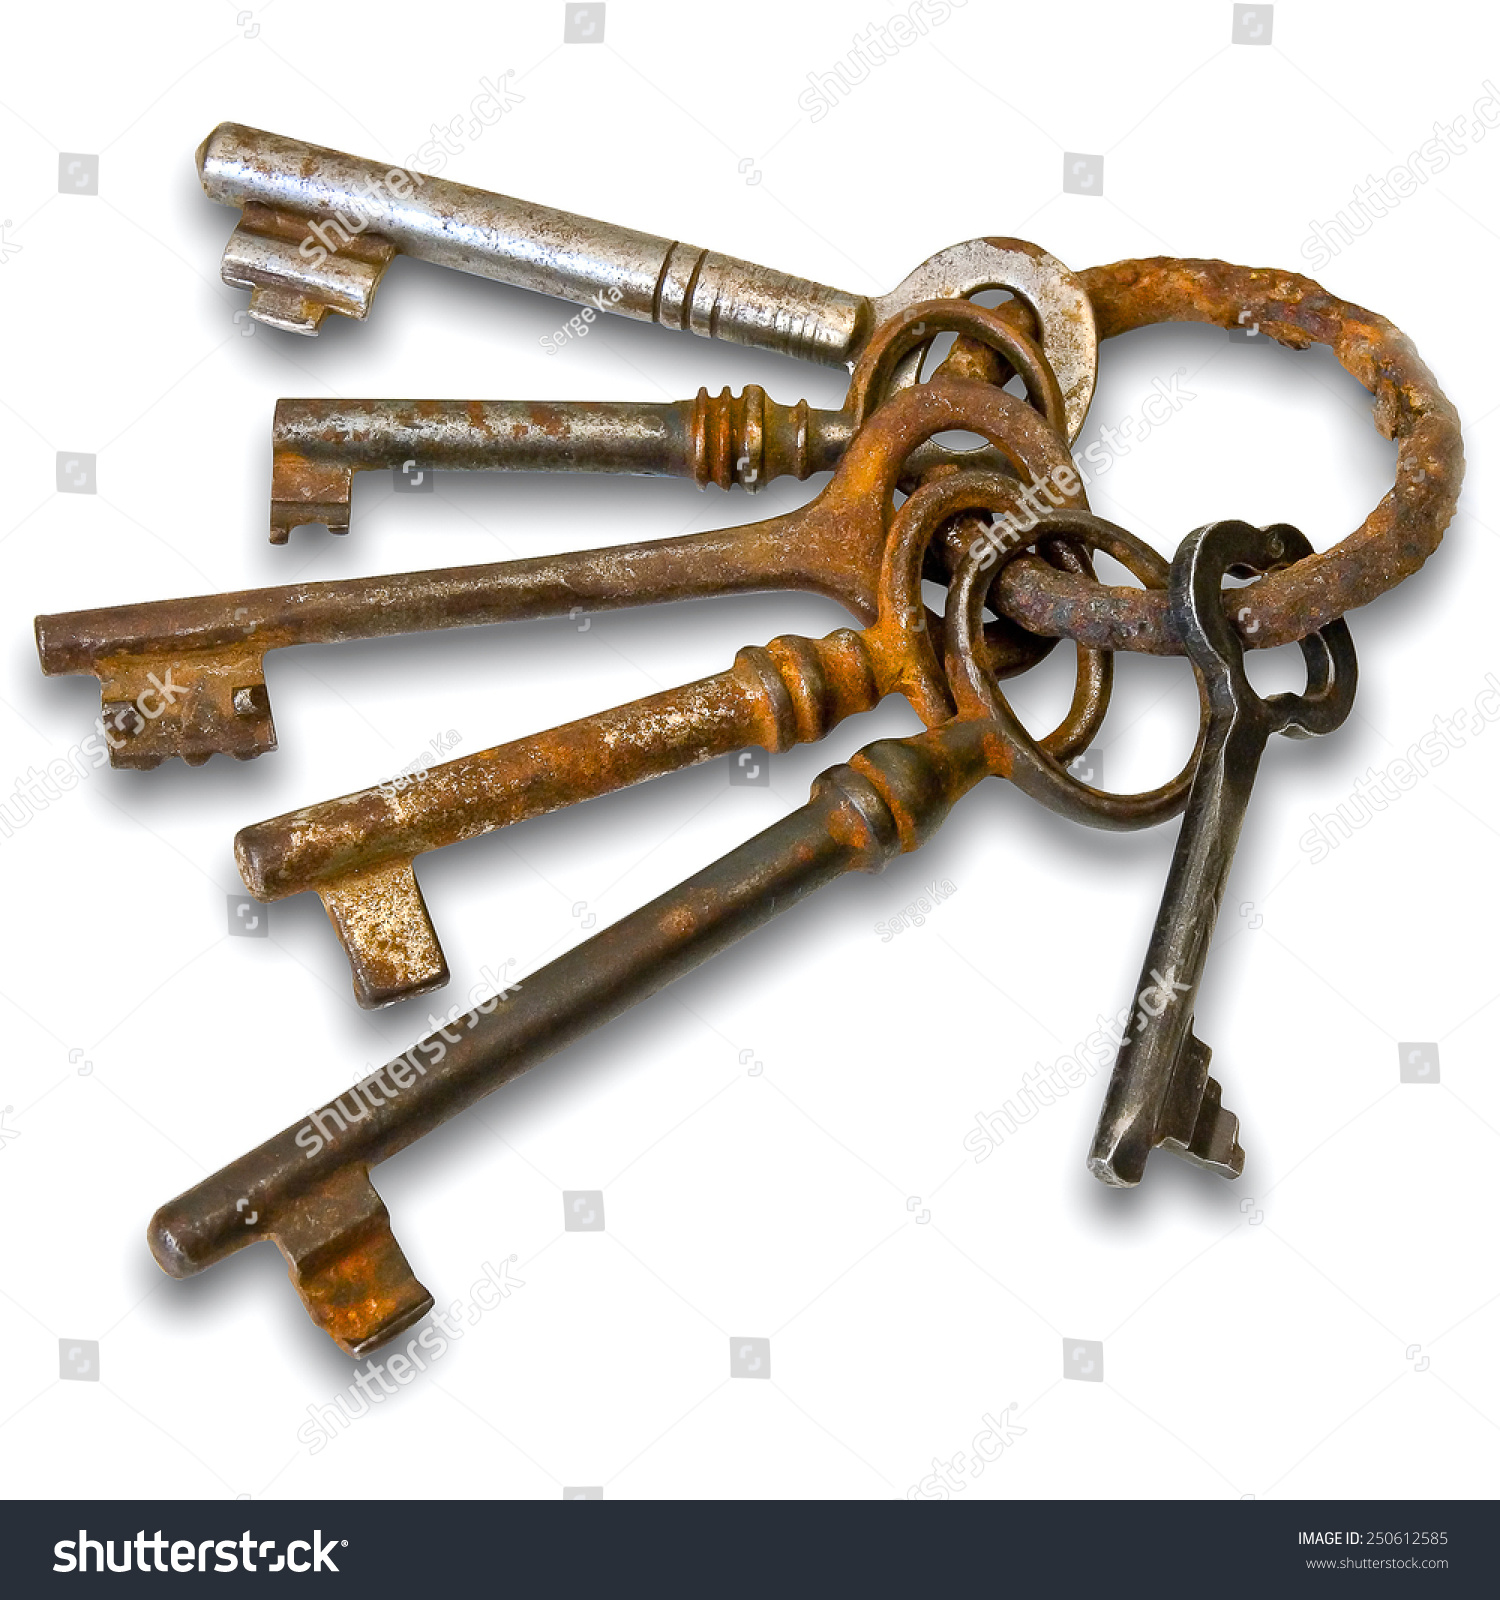 Old Keys On Metallic Ring On Stock Photo 250612585 - Shutterstock